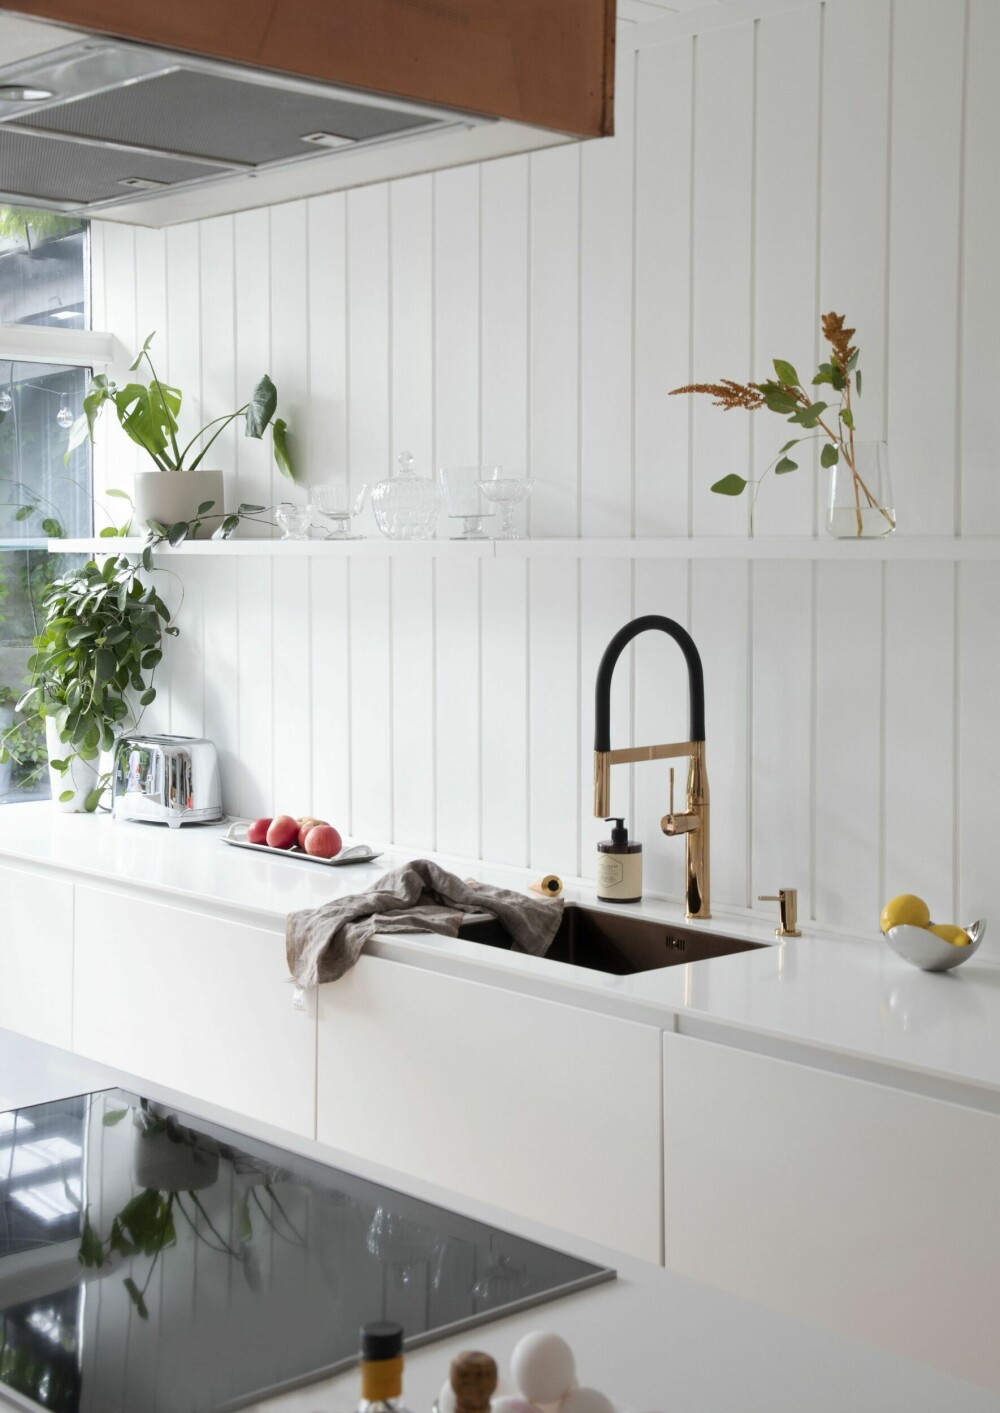 Overskap er valgt bort i det relativt lille rommet, for å ivareta lys og luft. De åpne hyllene gir mulighet til å lage litt miljø på den hvite veggflaten. Kjøkkenvasken er Lavabo Kubus, armaturen Essence fra Grohe og hvitevarene fra Miele.